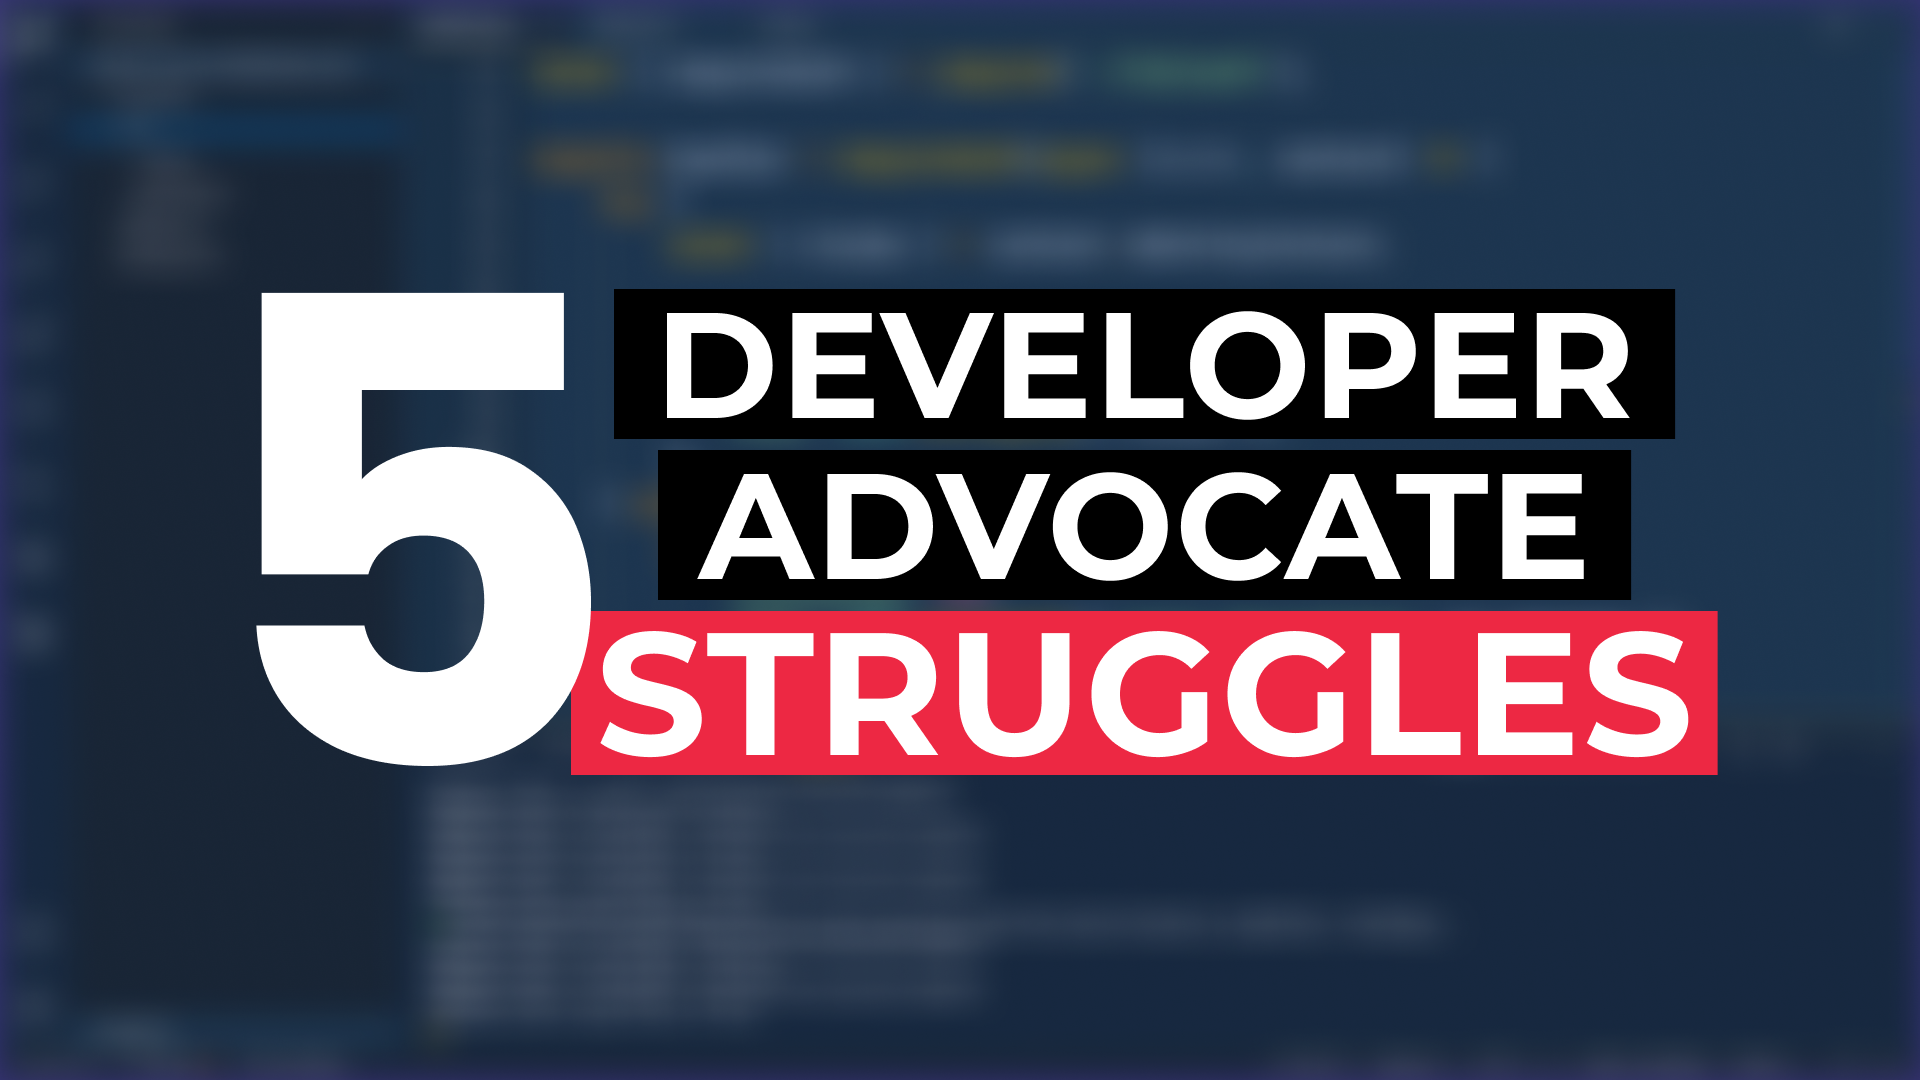 Top 5 Struggles of a Developer Advocate